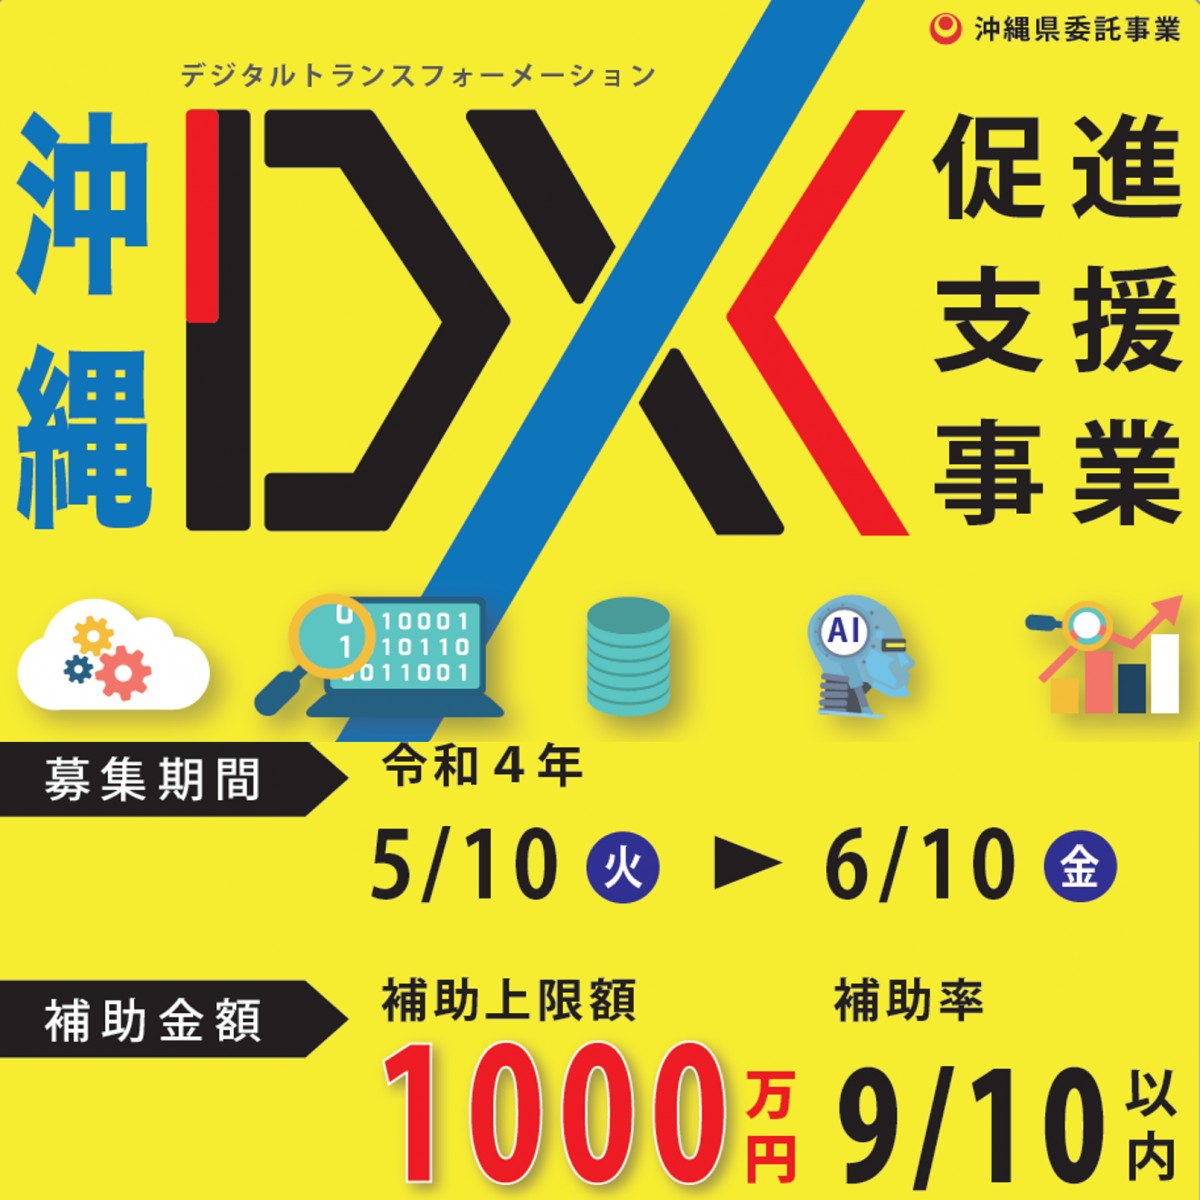 令和4年度「沖縄DX促進支援事業」がスタートしました！